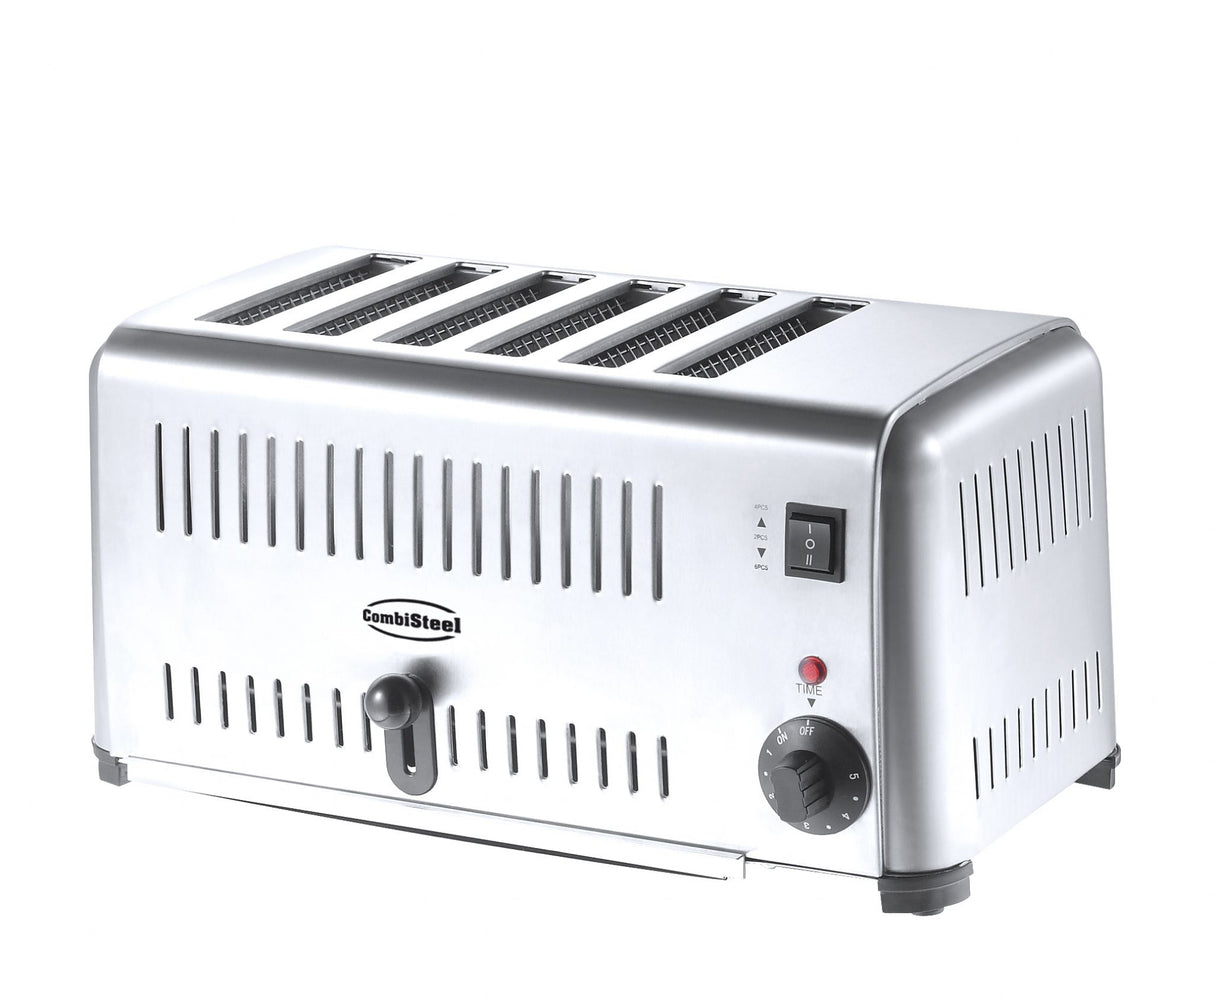 Combisteel Commercial Toaster 6 Slice - 7455.1640 Toasters Combisteel   